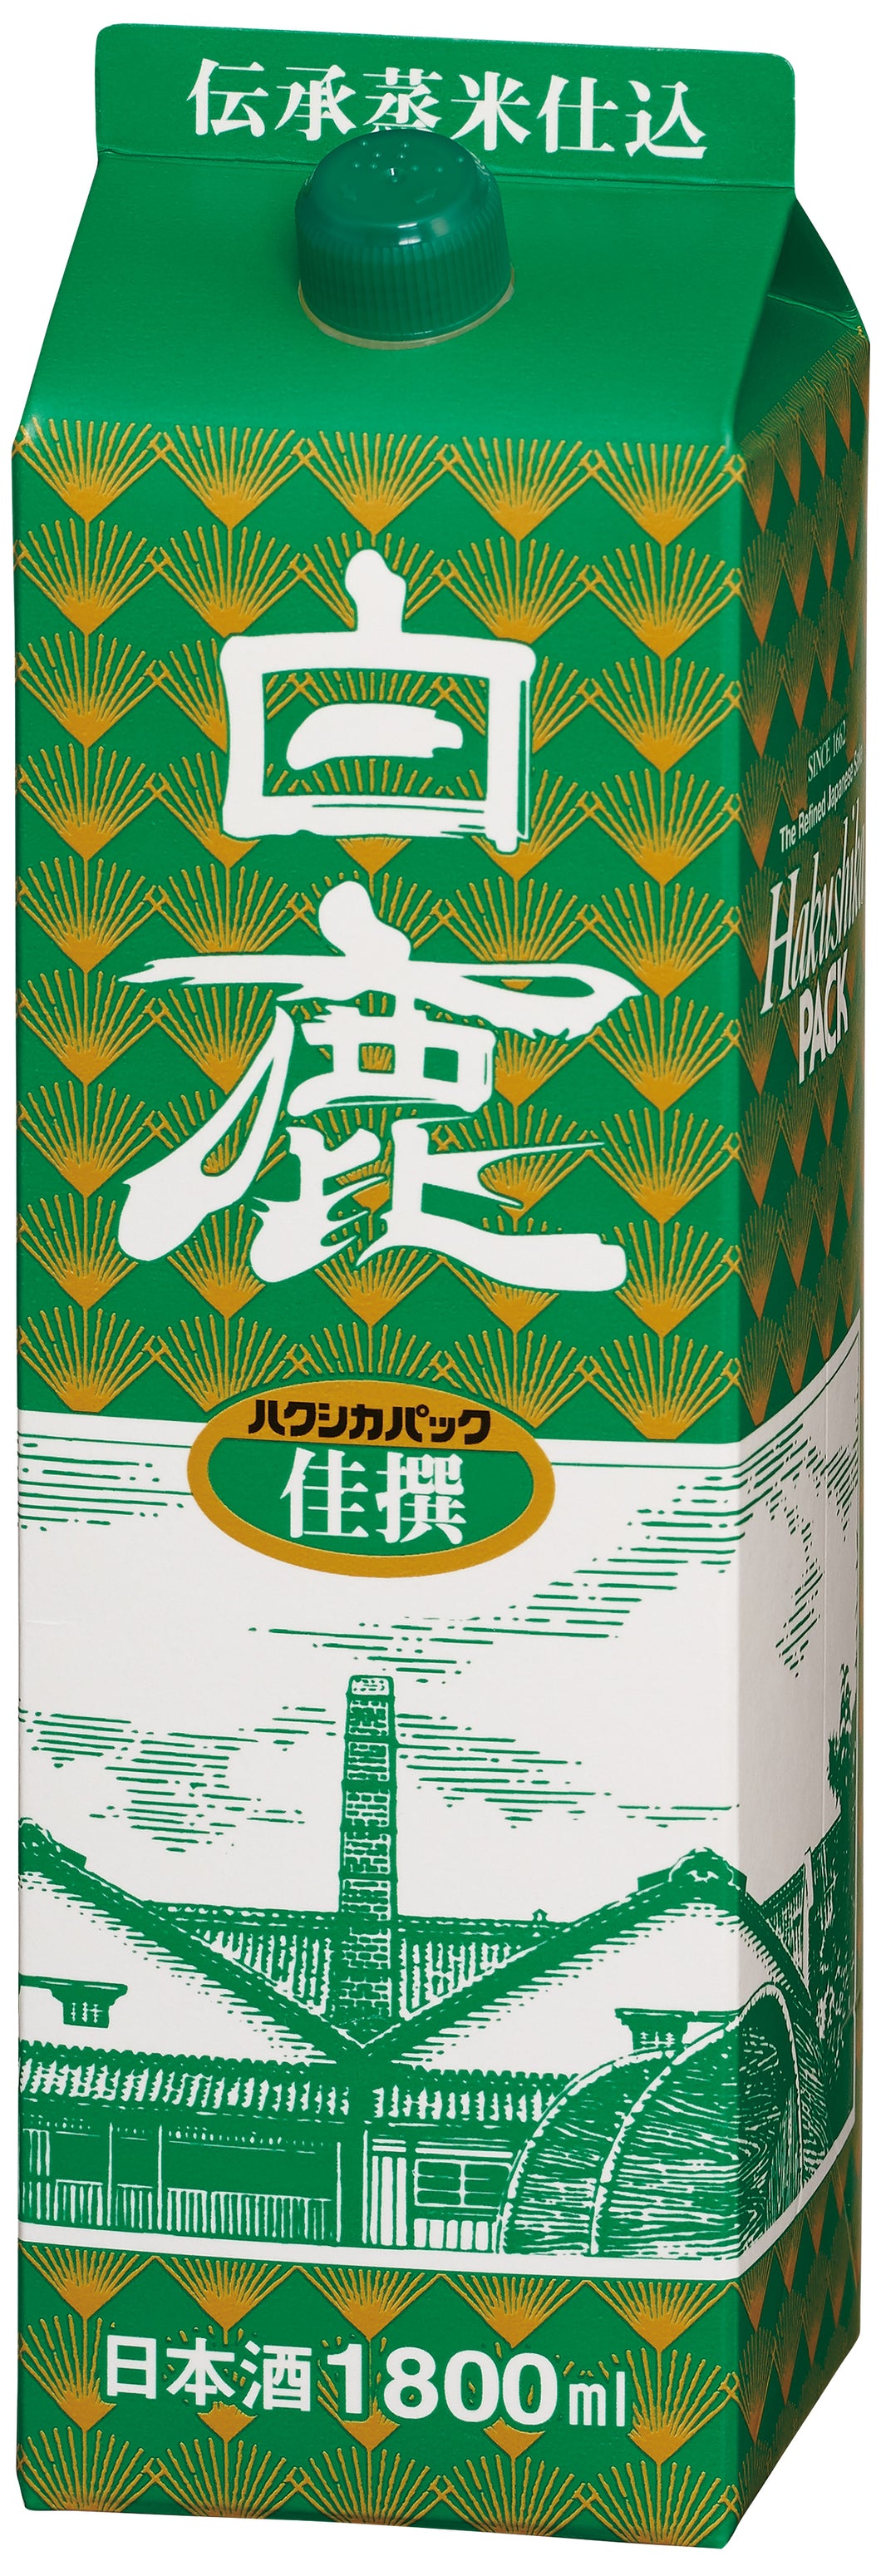 HAKUSHIKA Kasen Pack 1800 ml